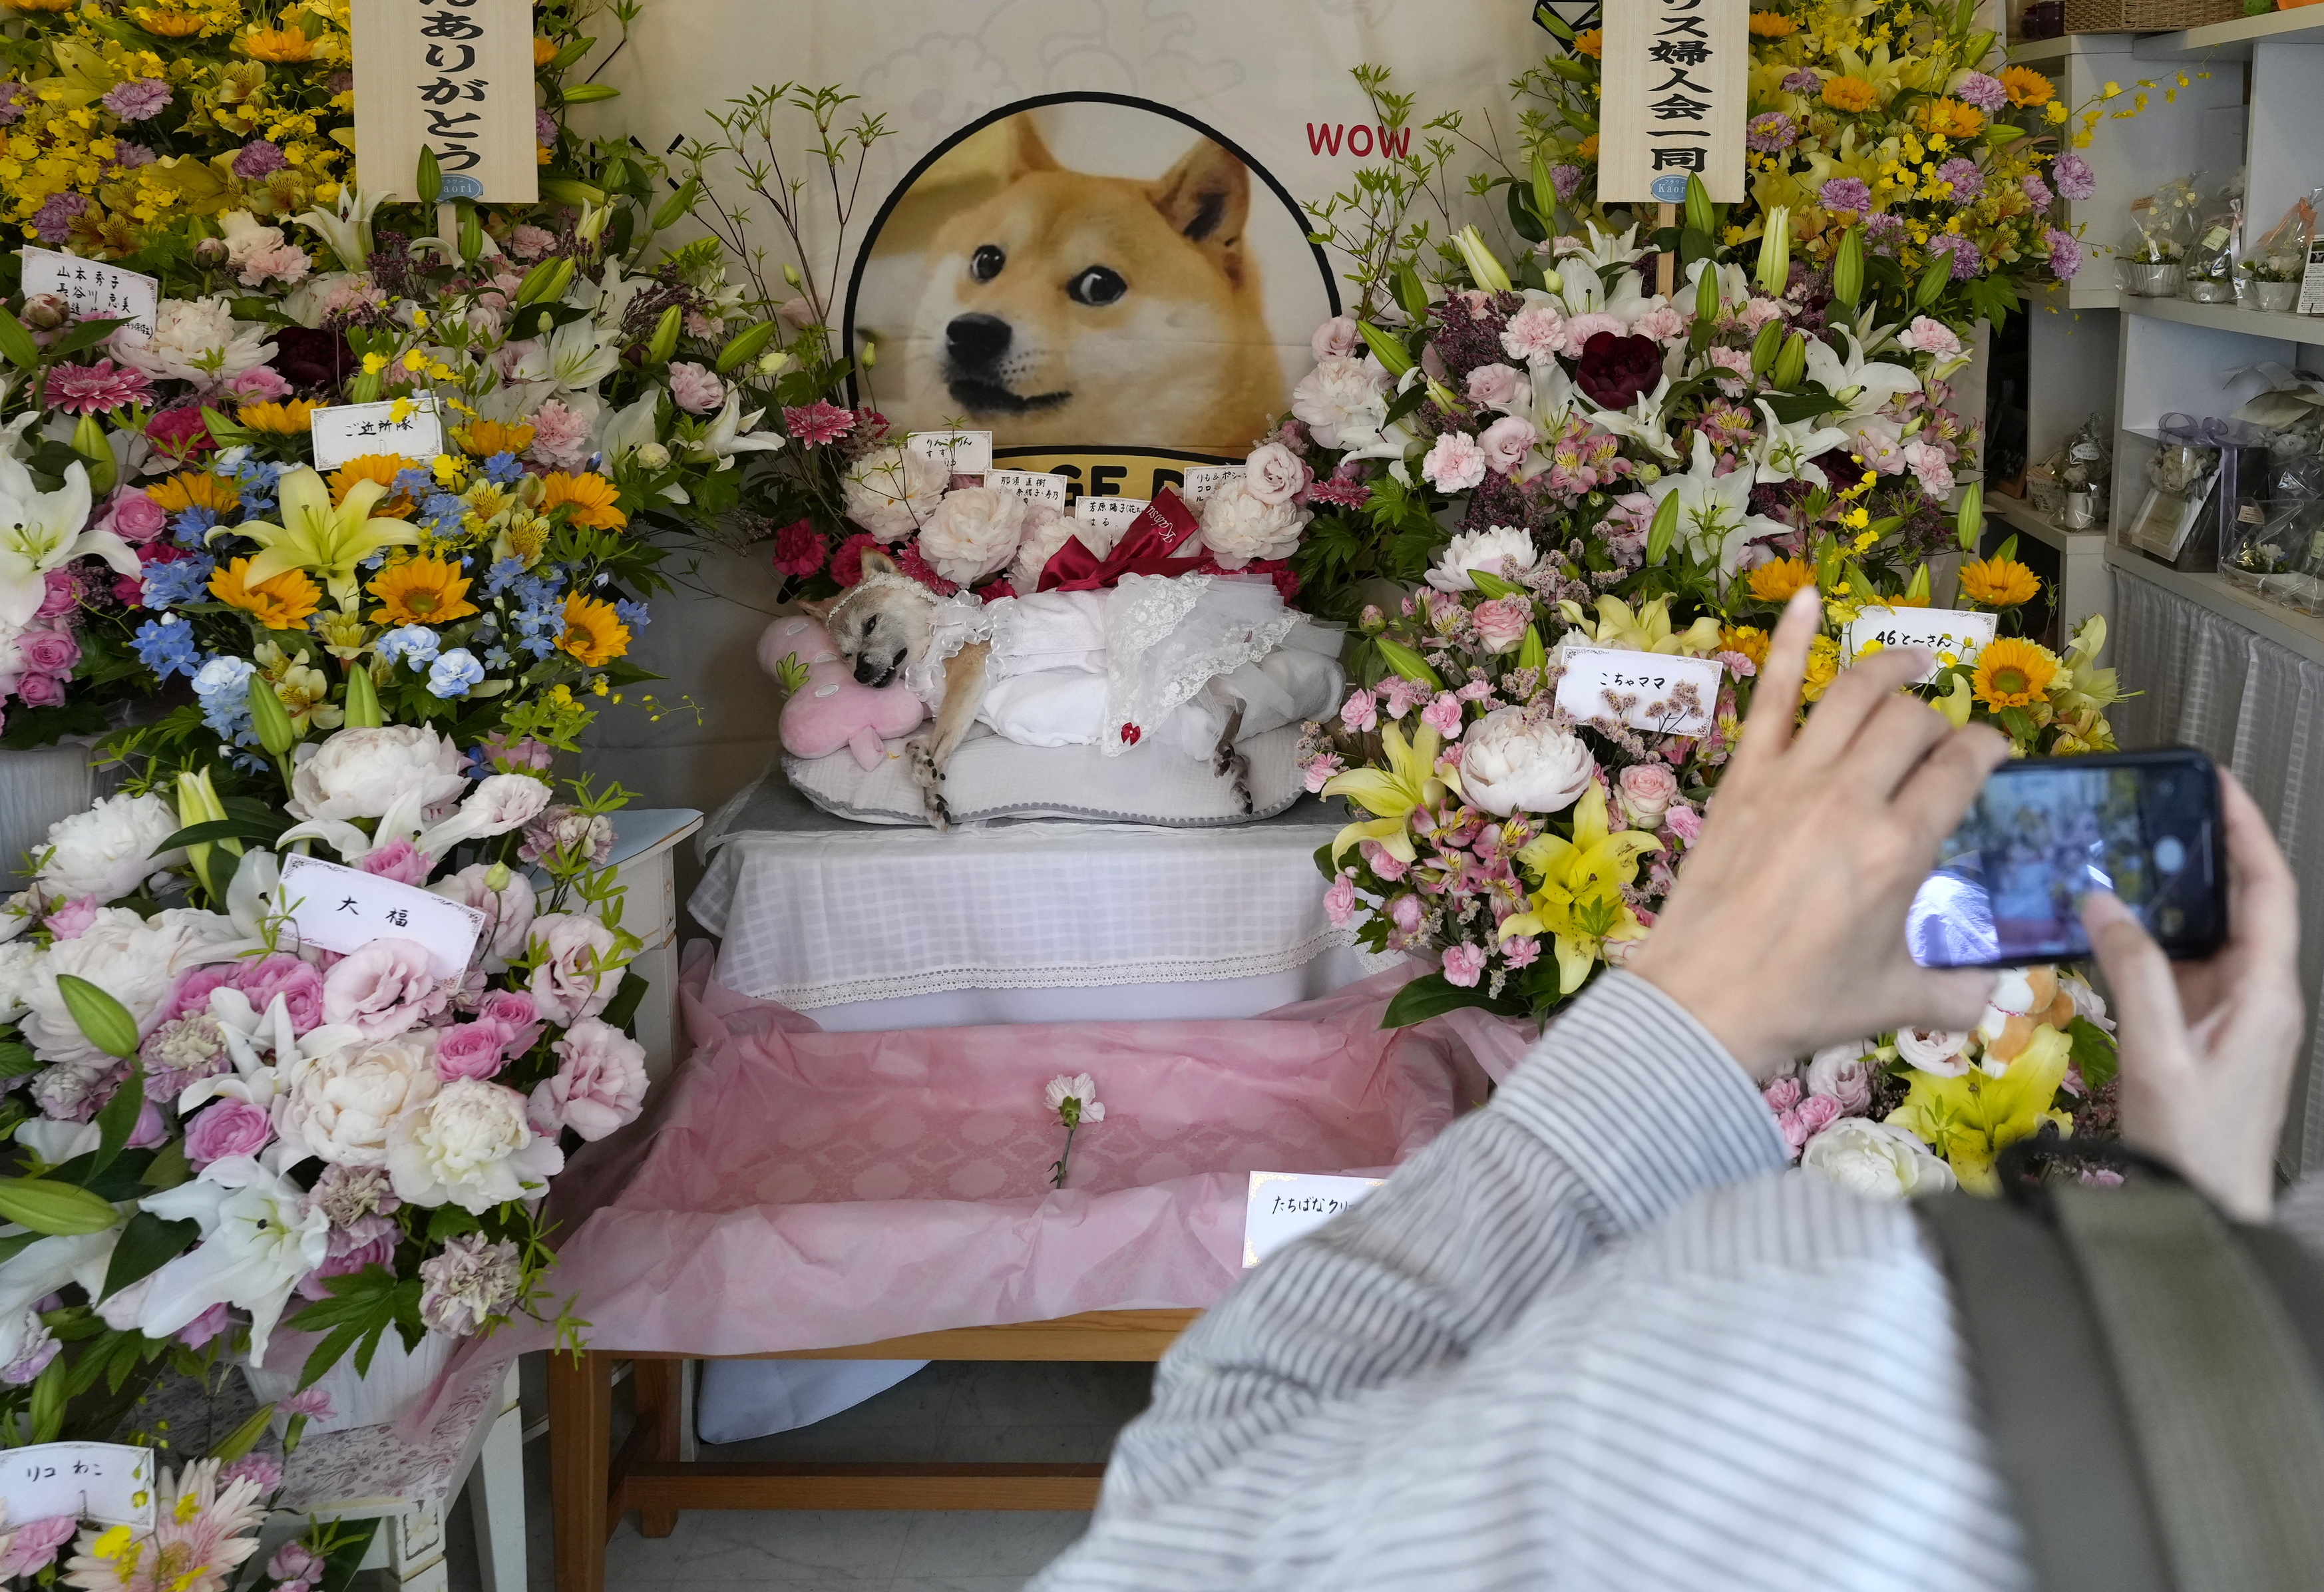 26일 일본 지바현 나리타시에 마련된 시바견 ‘카보스’의 추모 공간을 찾은 사람이 휴대전화로 사진을 찍고 있다. EPA 연합뉴스